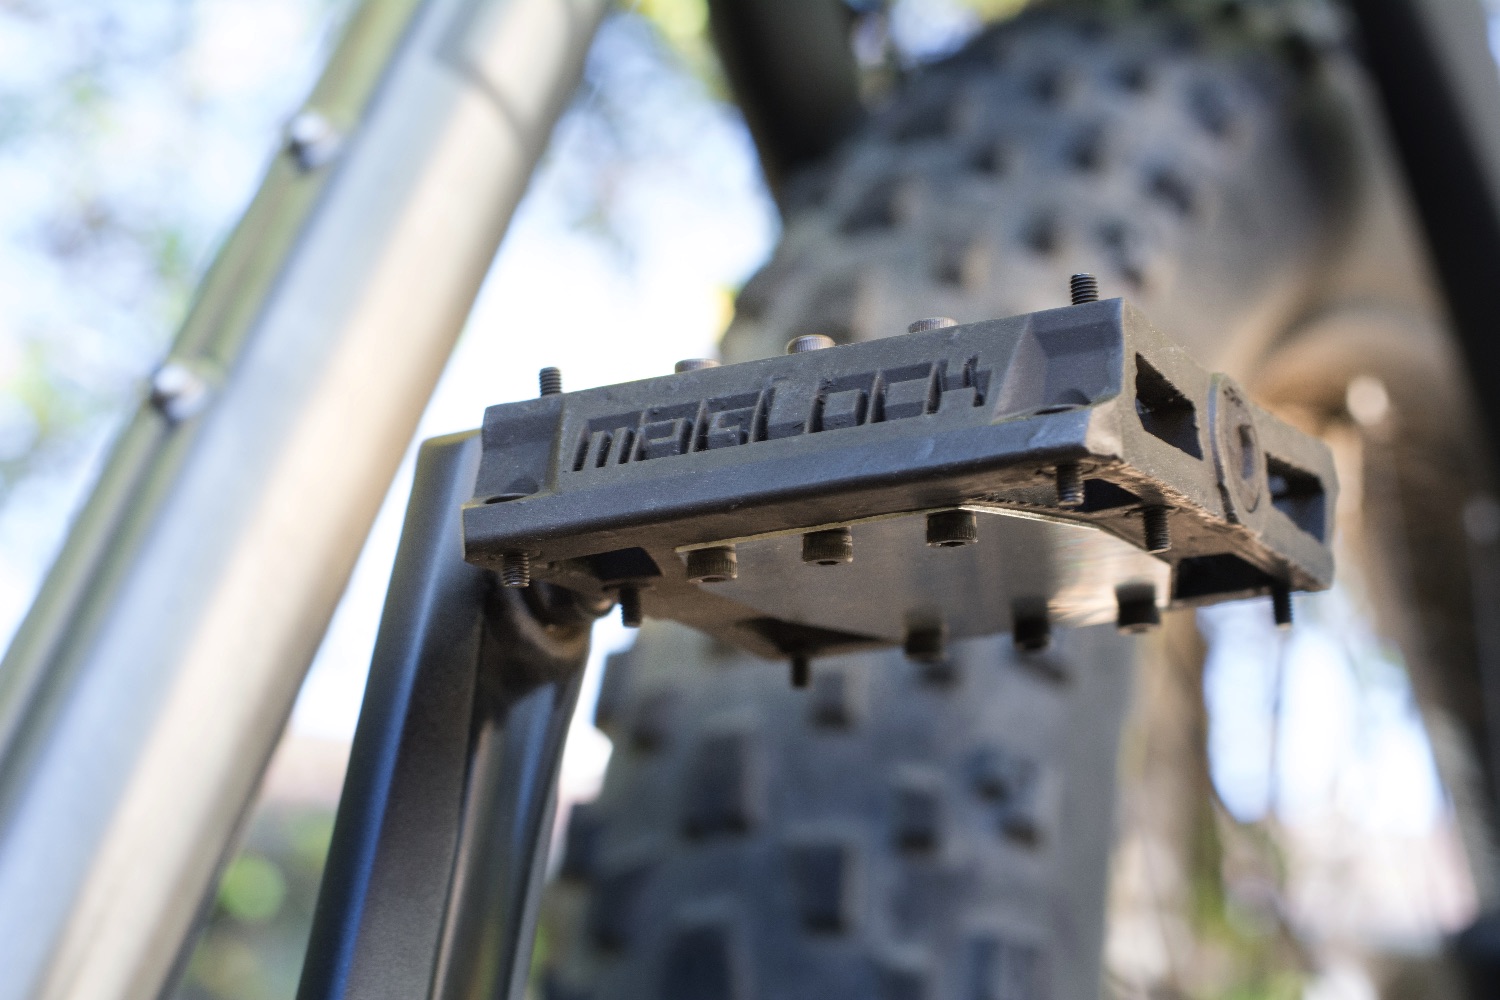 maglock bike pedals kickstarter jh1116 4559